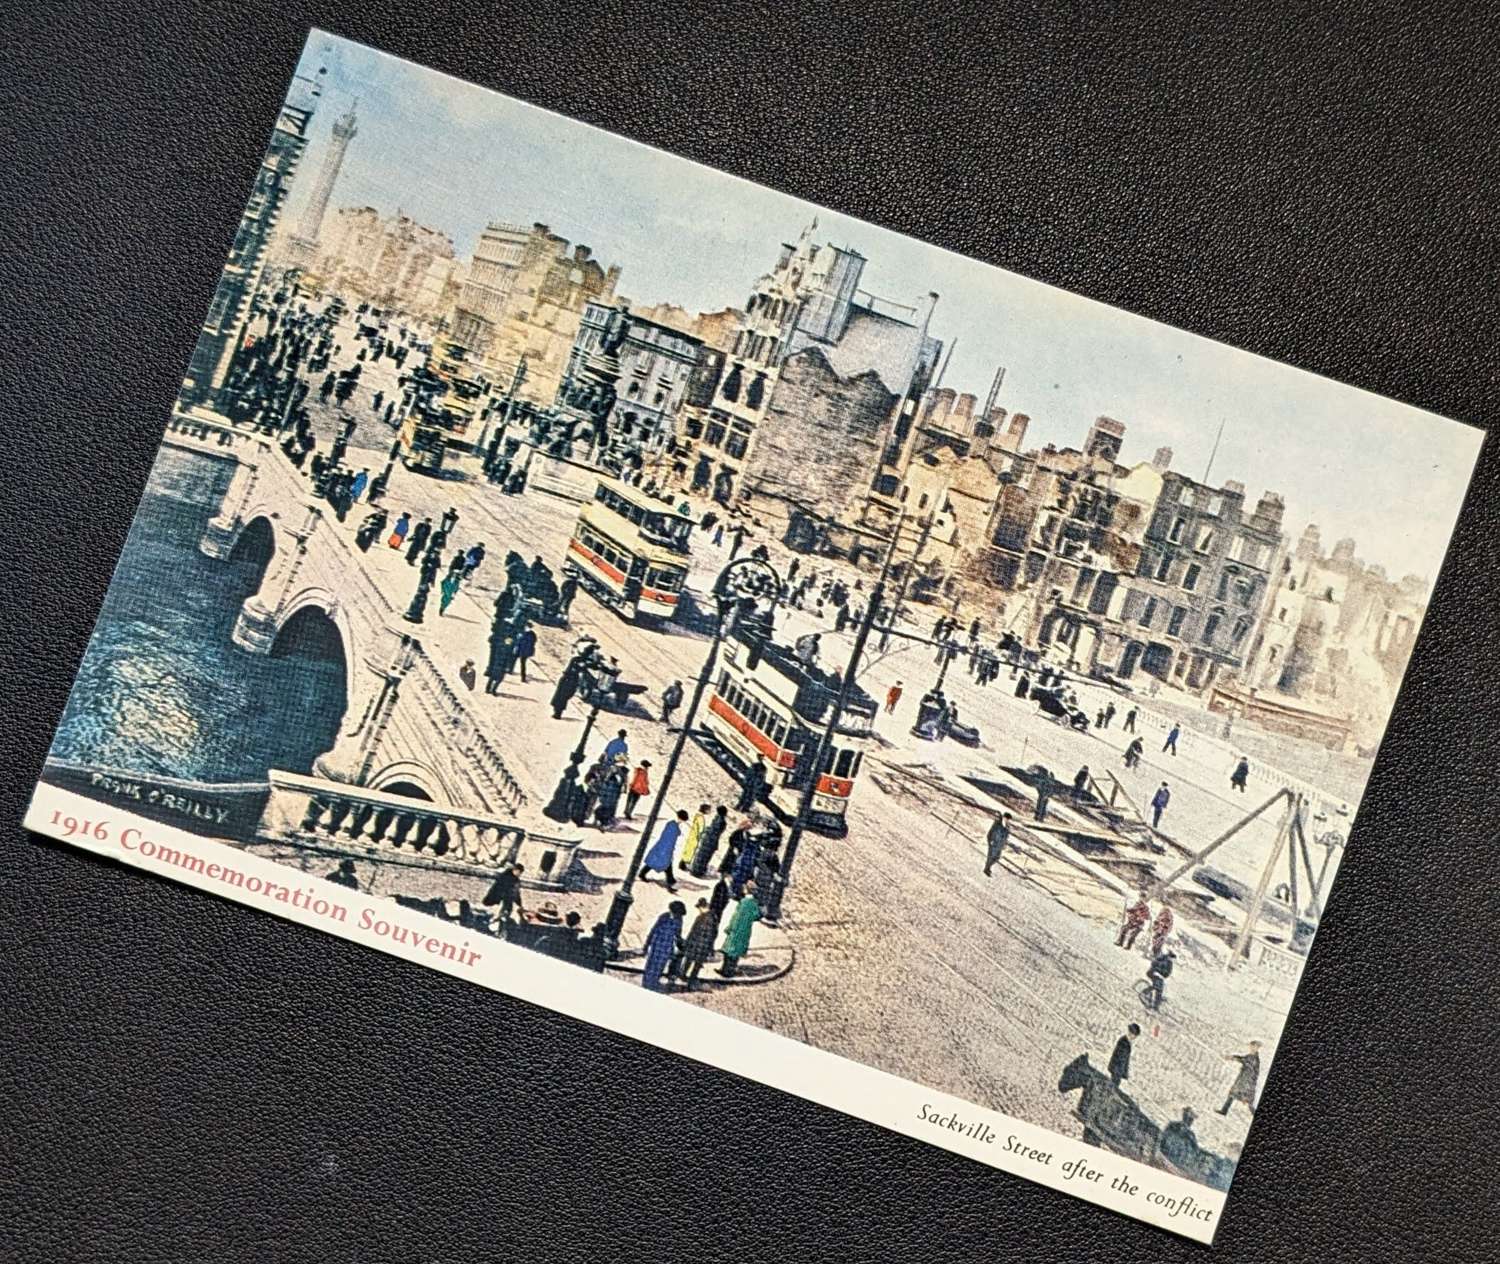 1916-1966 Commemoration Souvenir Postcard 